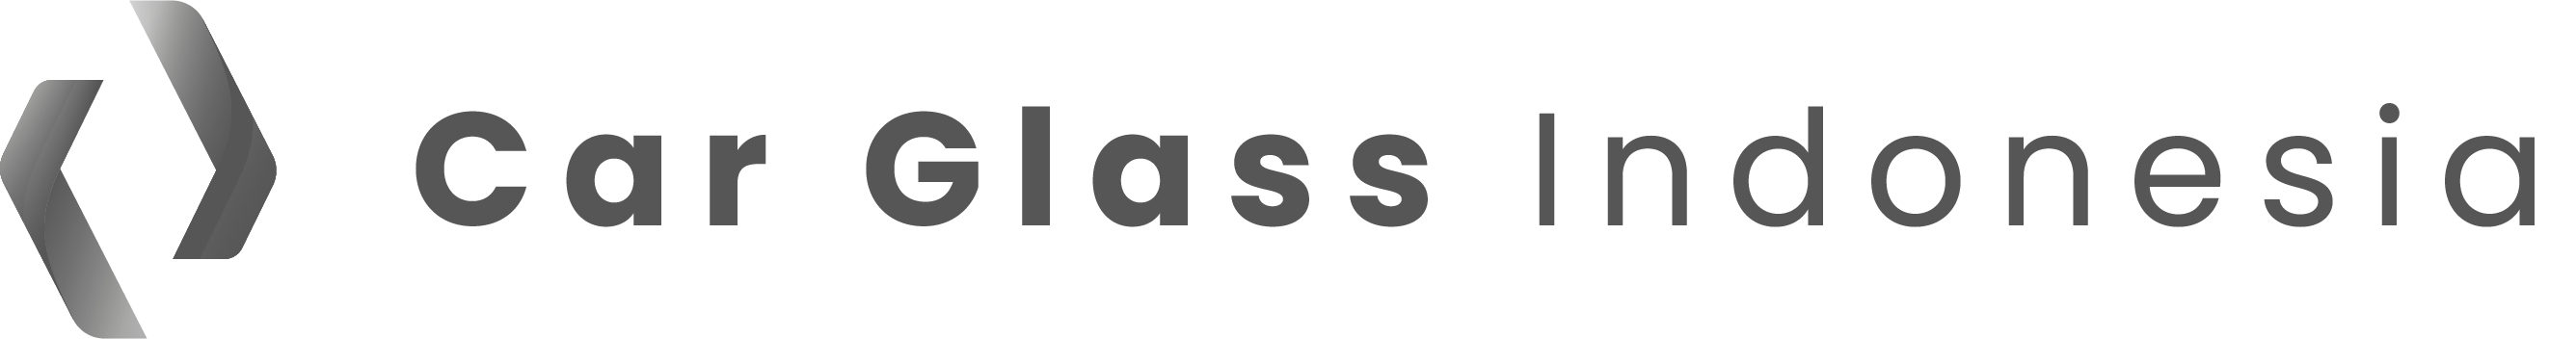 Car Glass Indonesia Logo